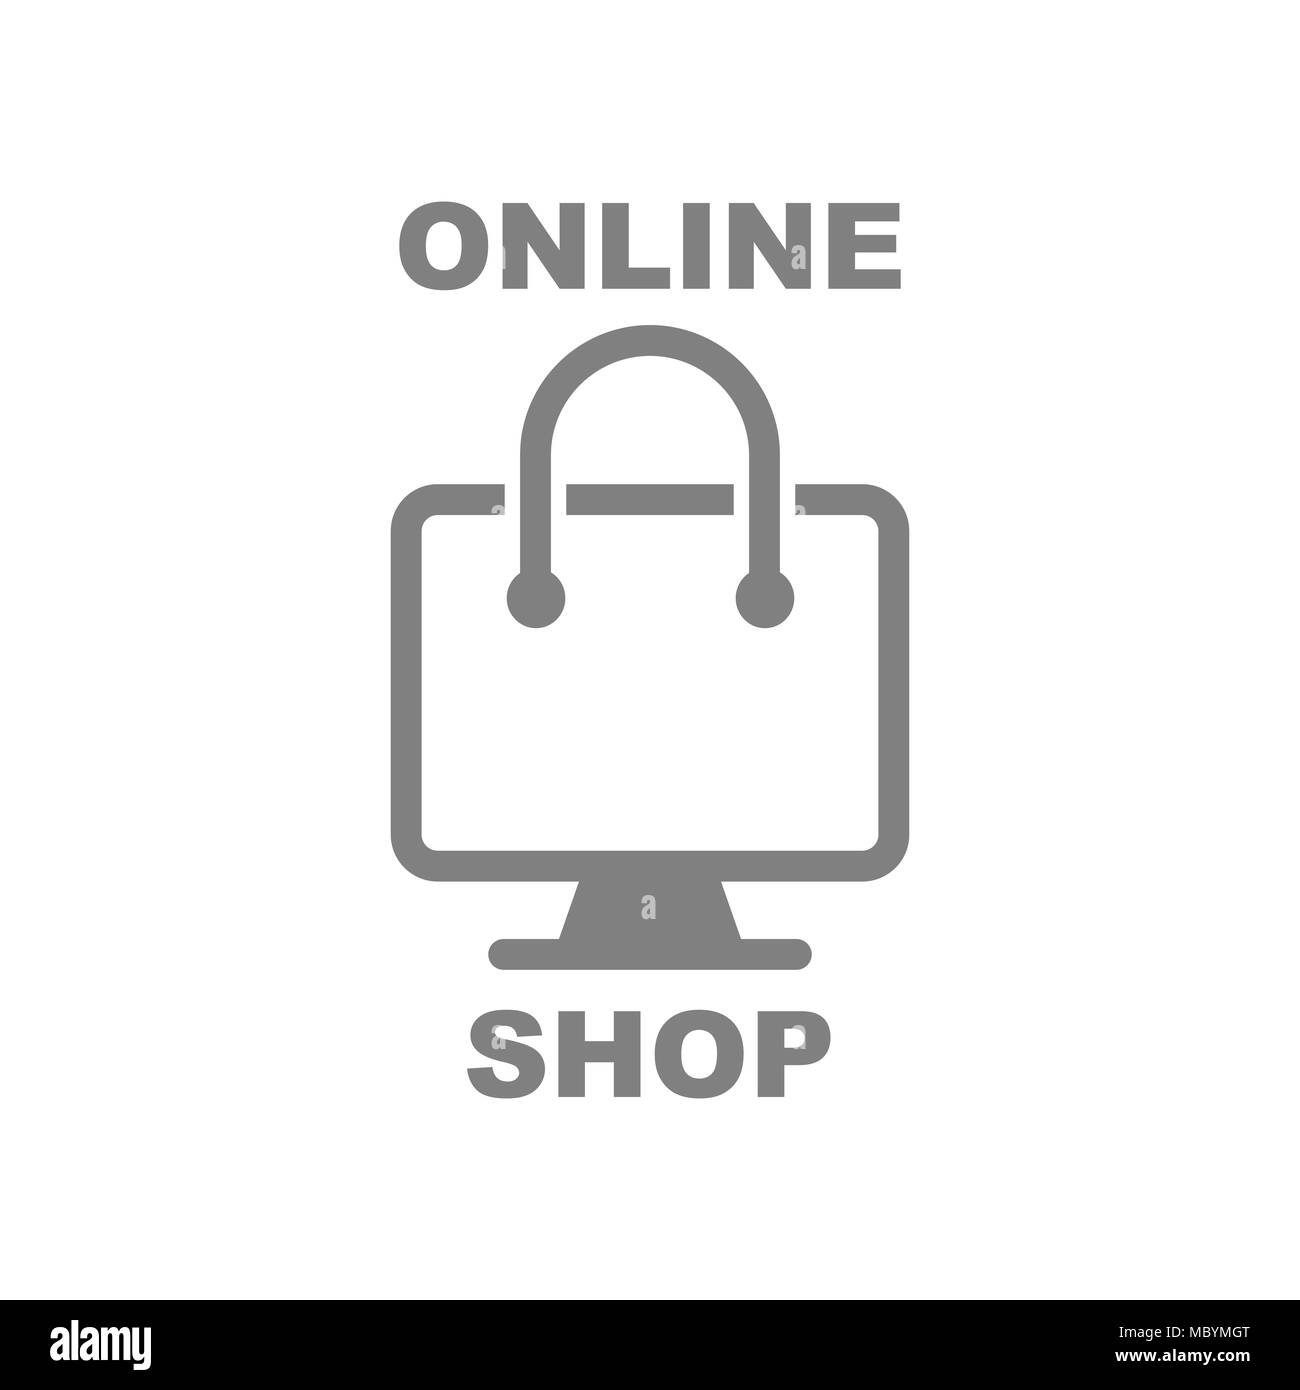 Online Shopping. Abstrakte shop Logo, Design, Signet, Symbol, wortmarke Element für Vorlage Stock Vektor